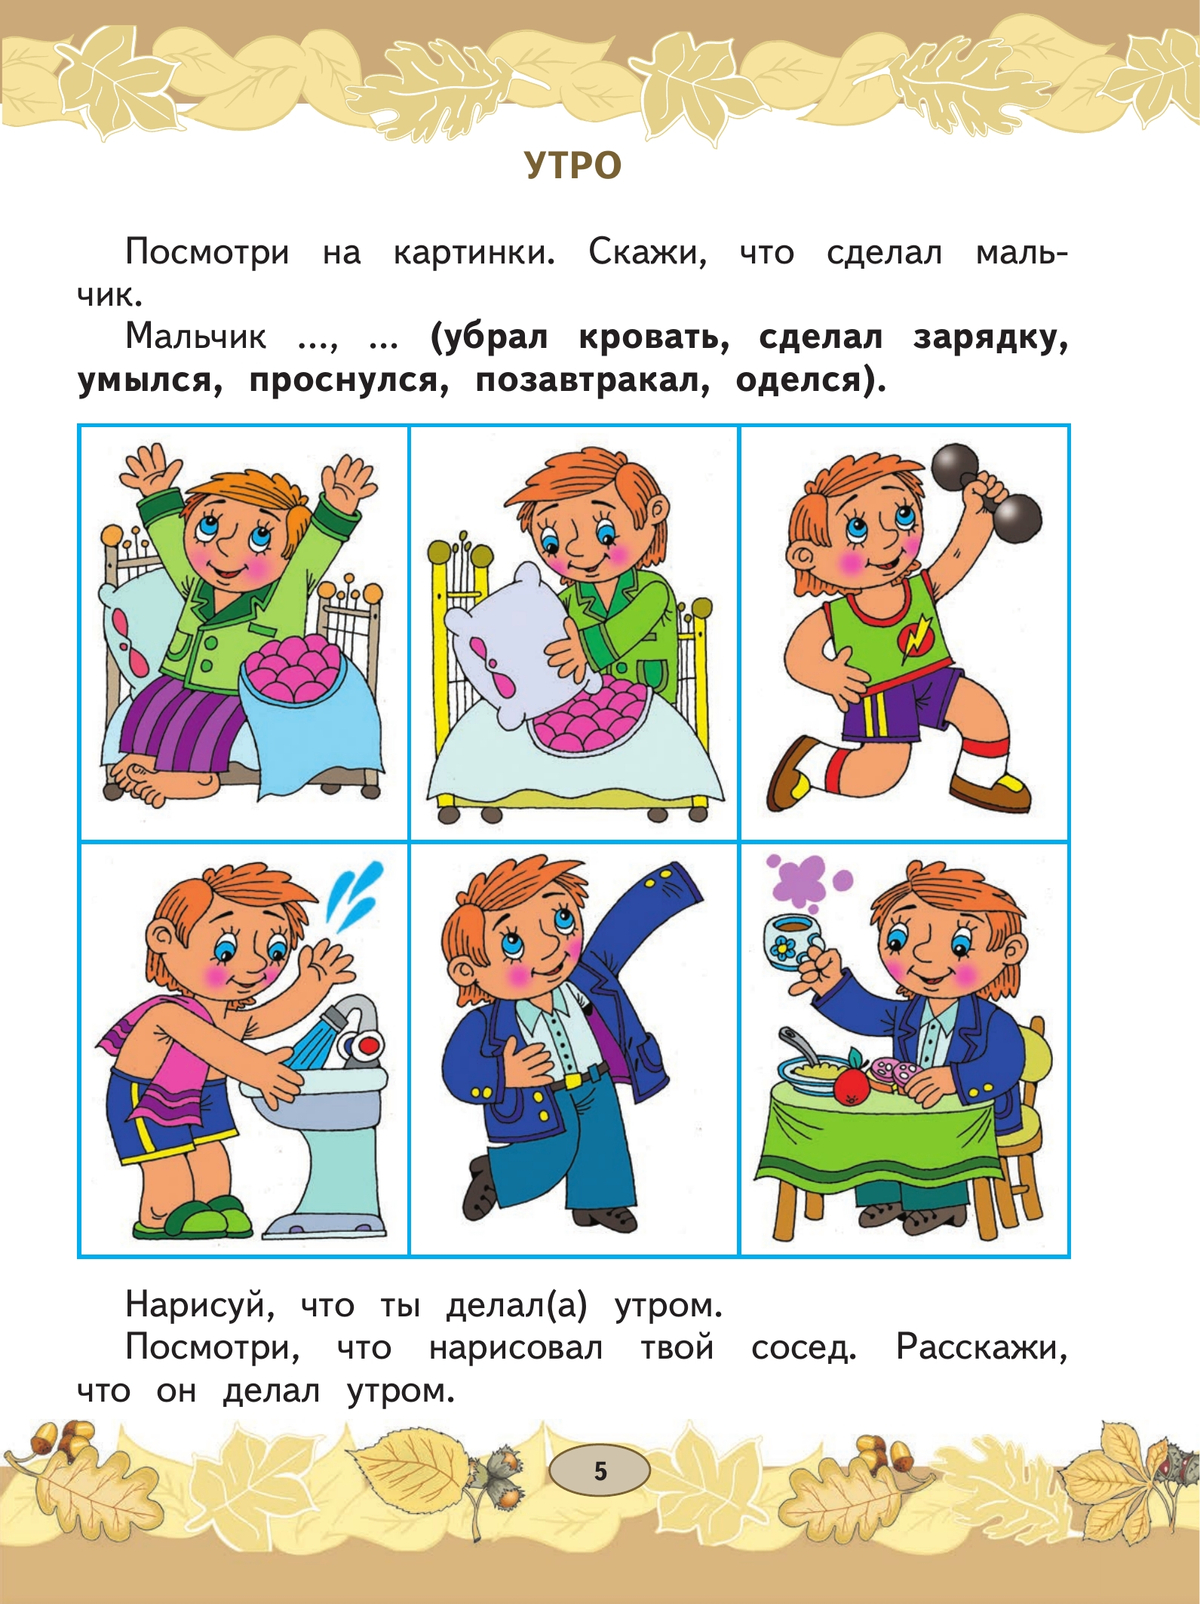 Русский язык. Развитие речи. 1 класс. Учебник. В 2 ч. Часть 1 (для глухих обучающихся) 2